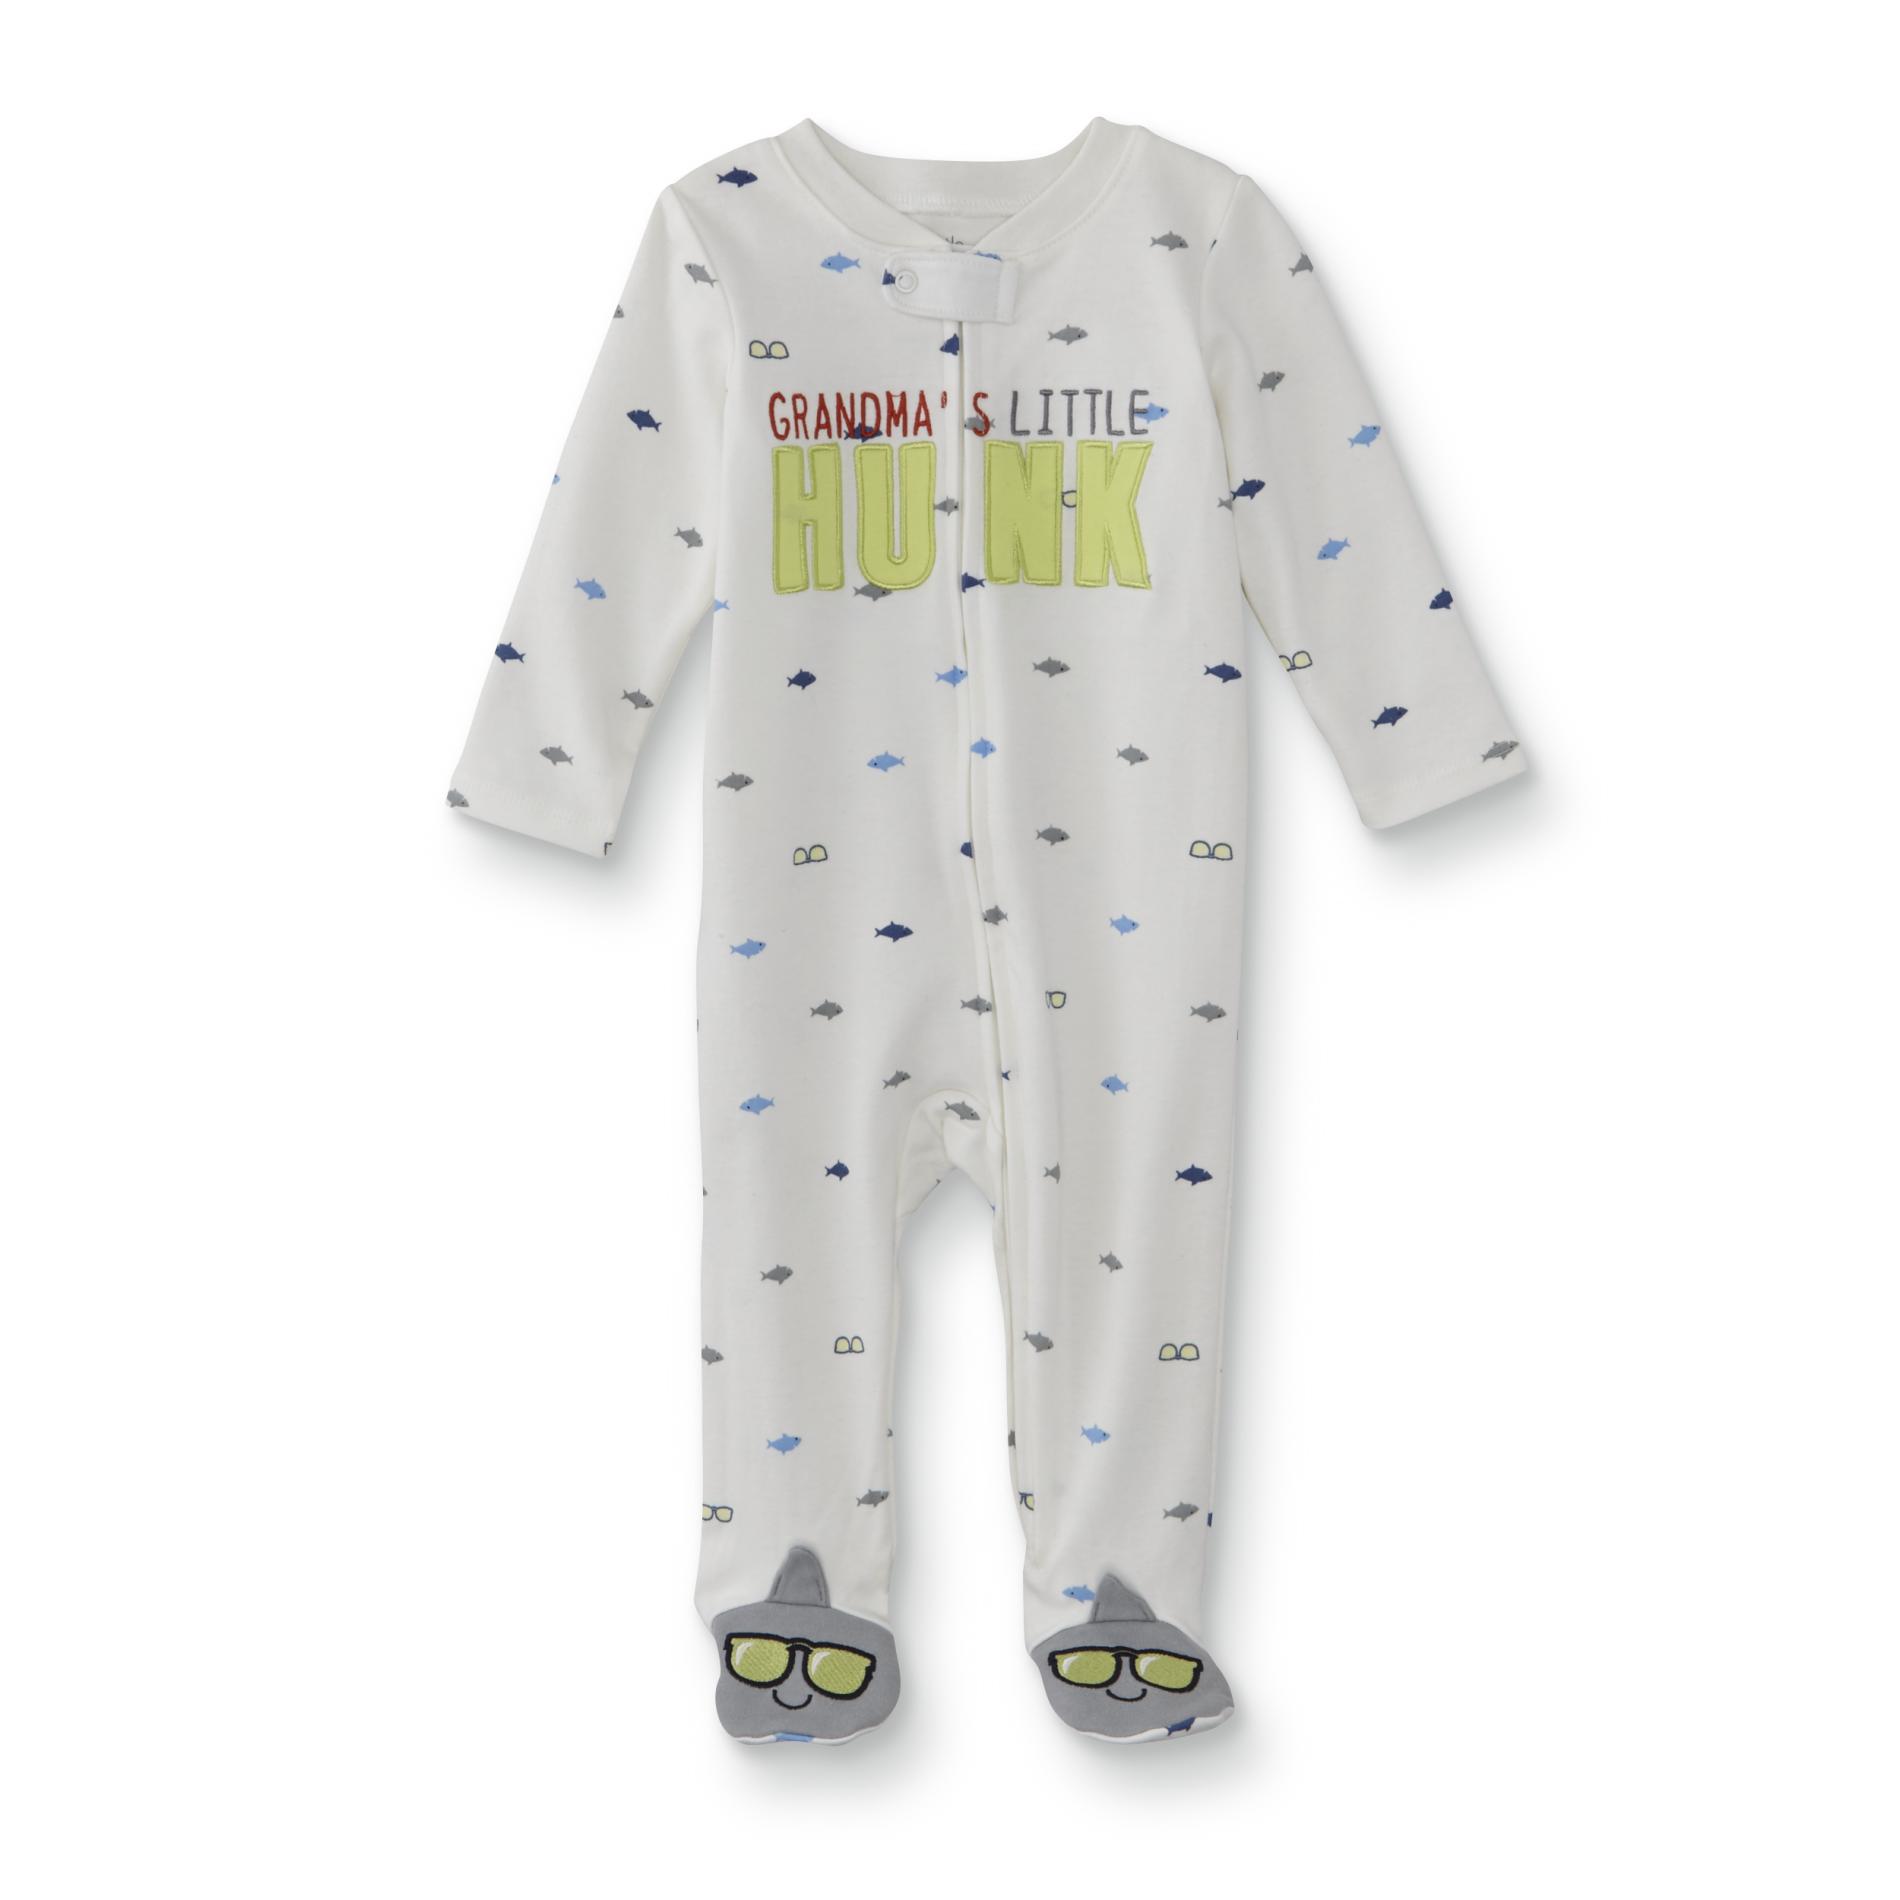 Little Wonders Infant Boys' Sleeper Pajamas - Grandma's Little Hunk